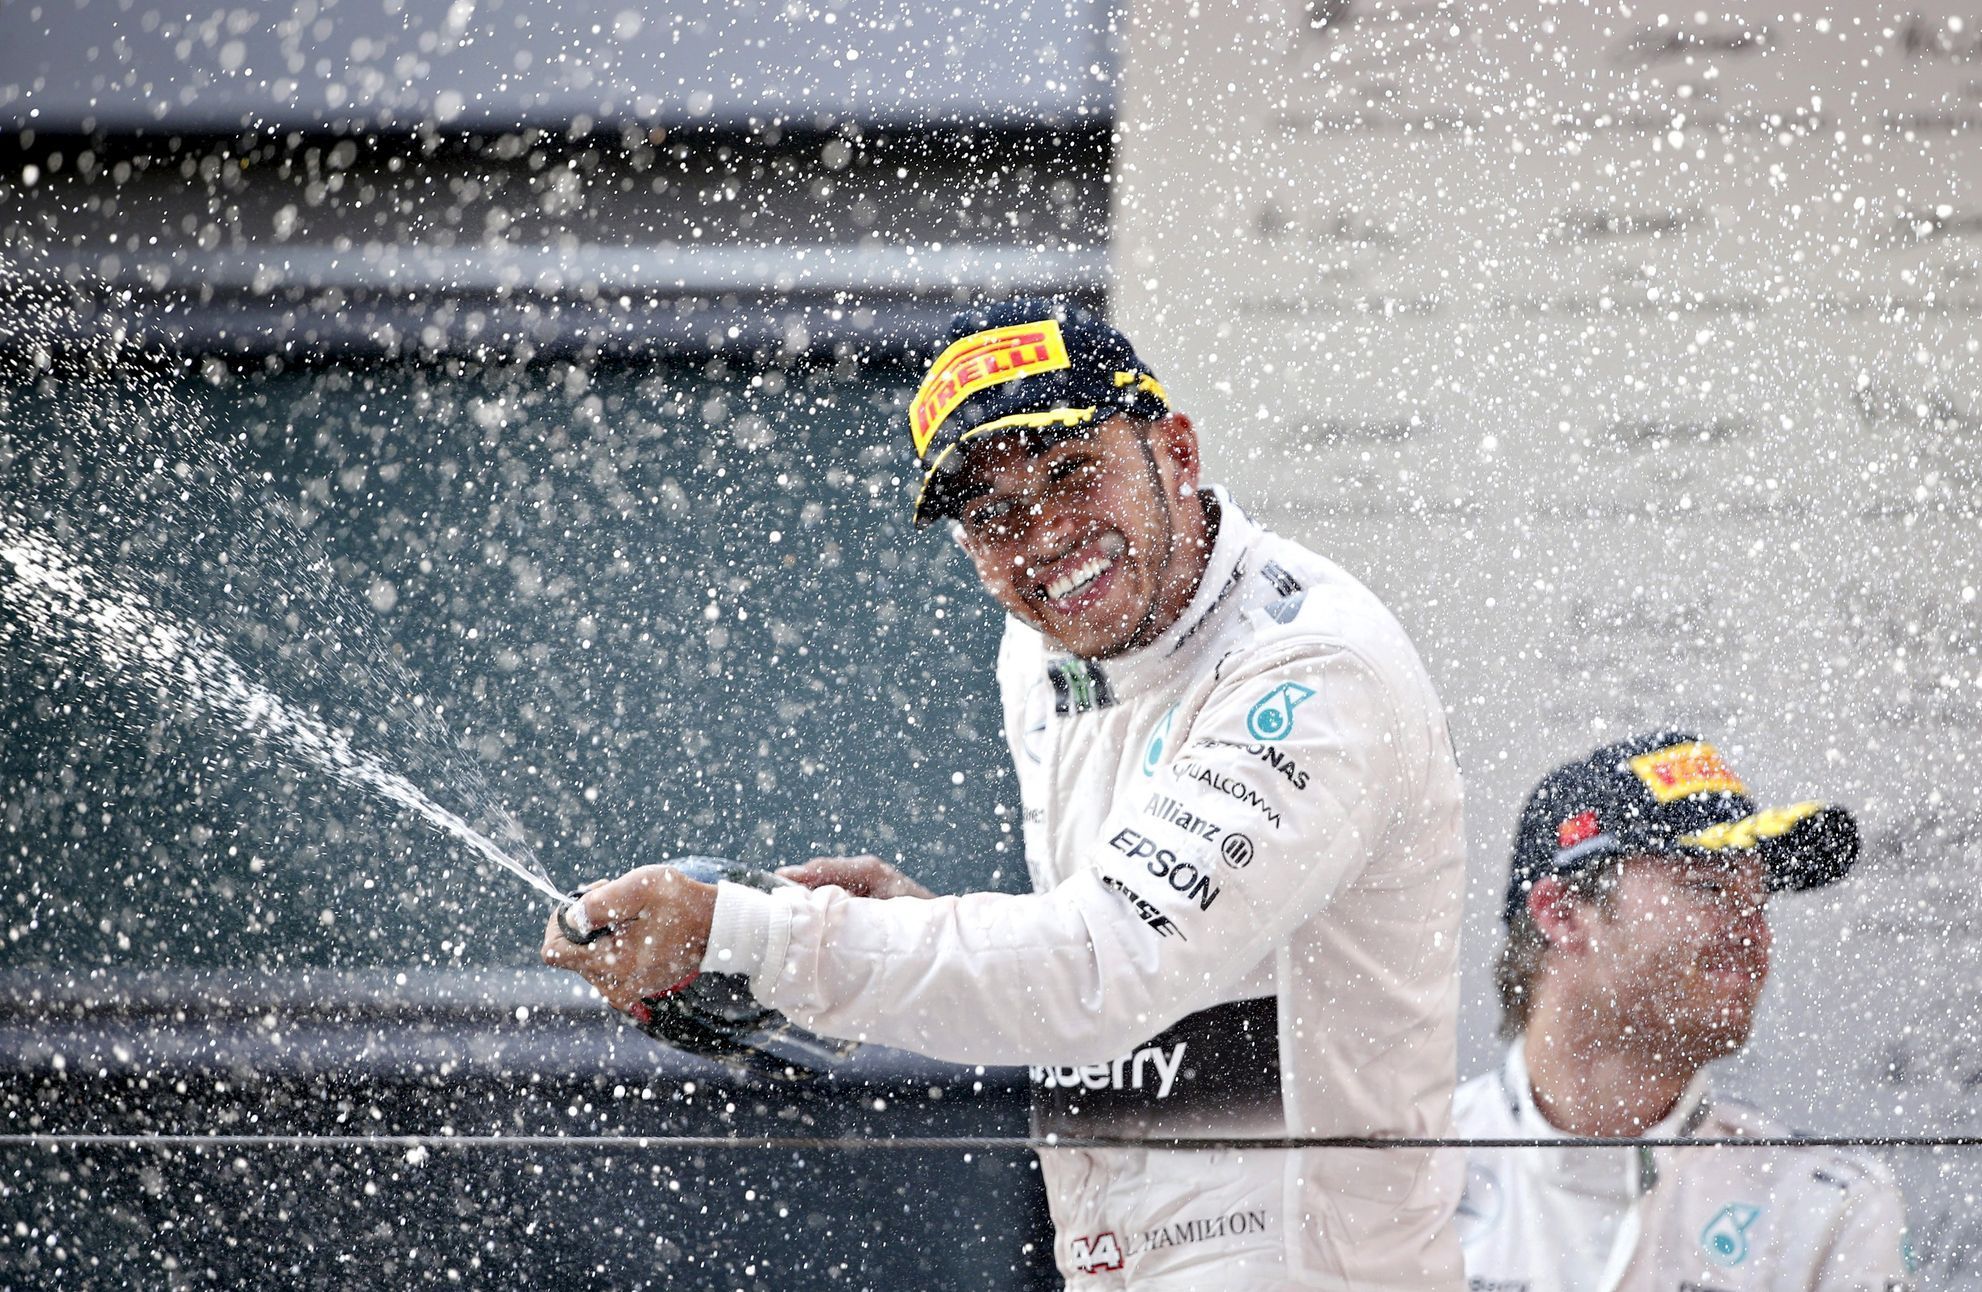 F1, VC Číny: Lewis Hamilton, Mercedes